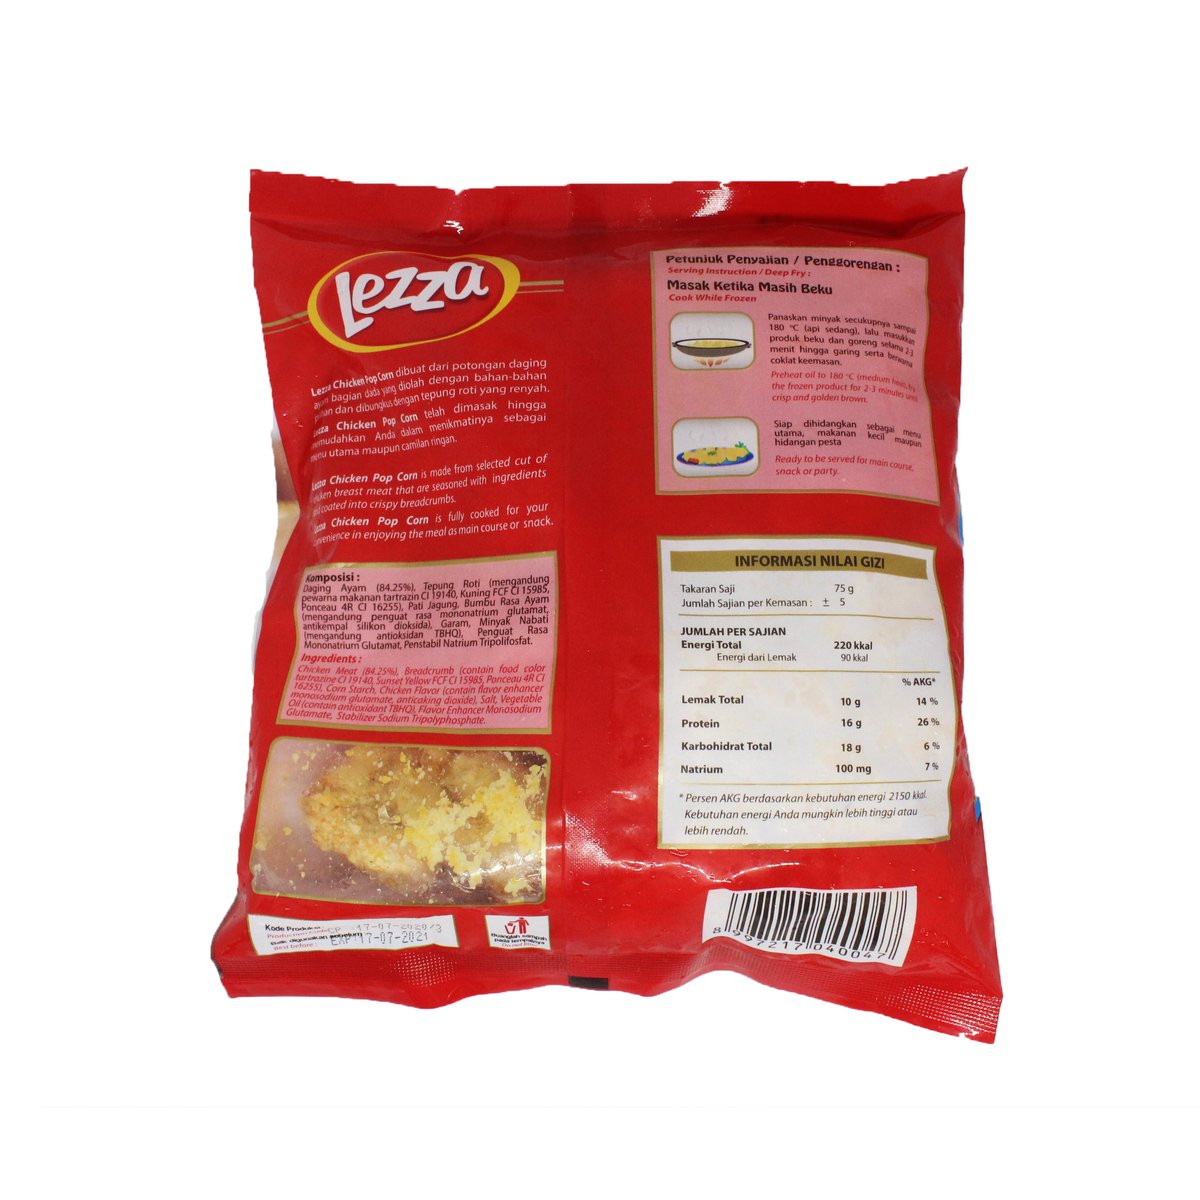 Lezza Chicken Pop Corn 400g